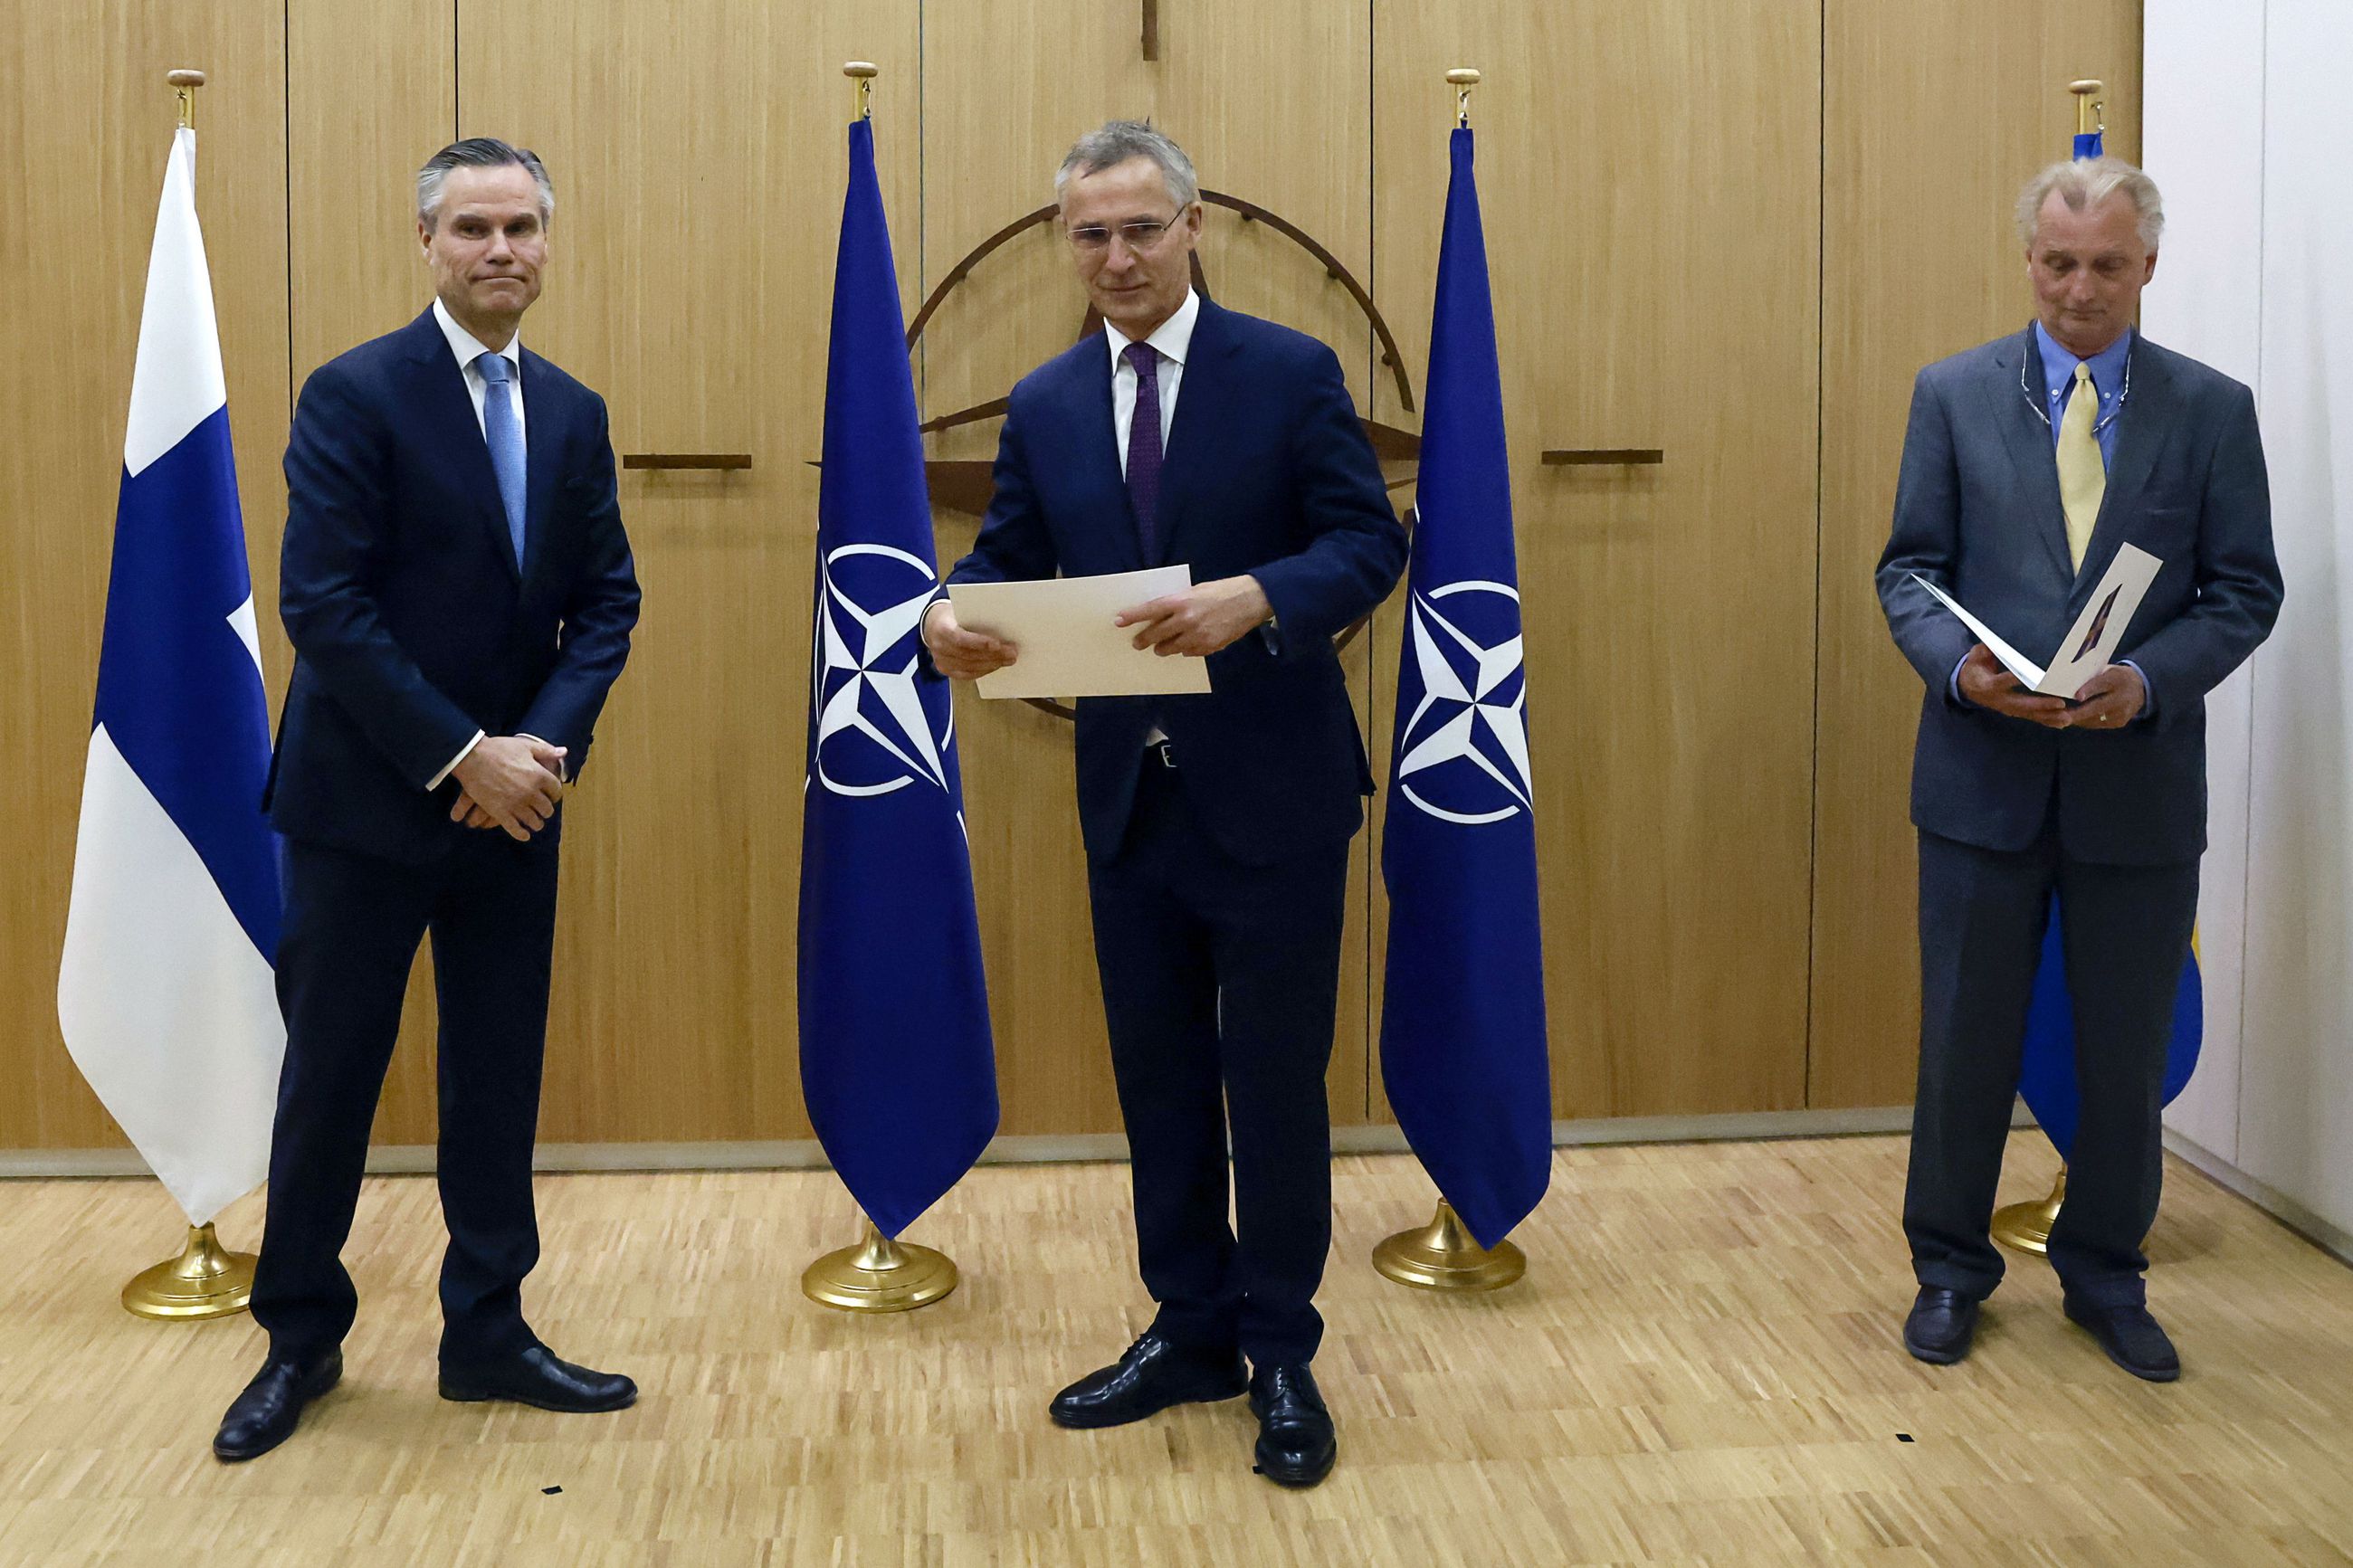 Suomen jäsenhakemus on toimitettu Naton pääsihteerille– Stoltenberg: Kaikki  jäsenet ovat samaa mieltä Naton laajenemisen tärkeydestä | Kaleva